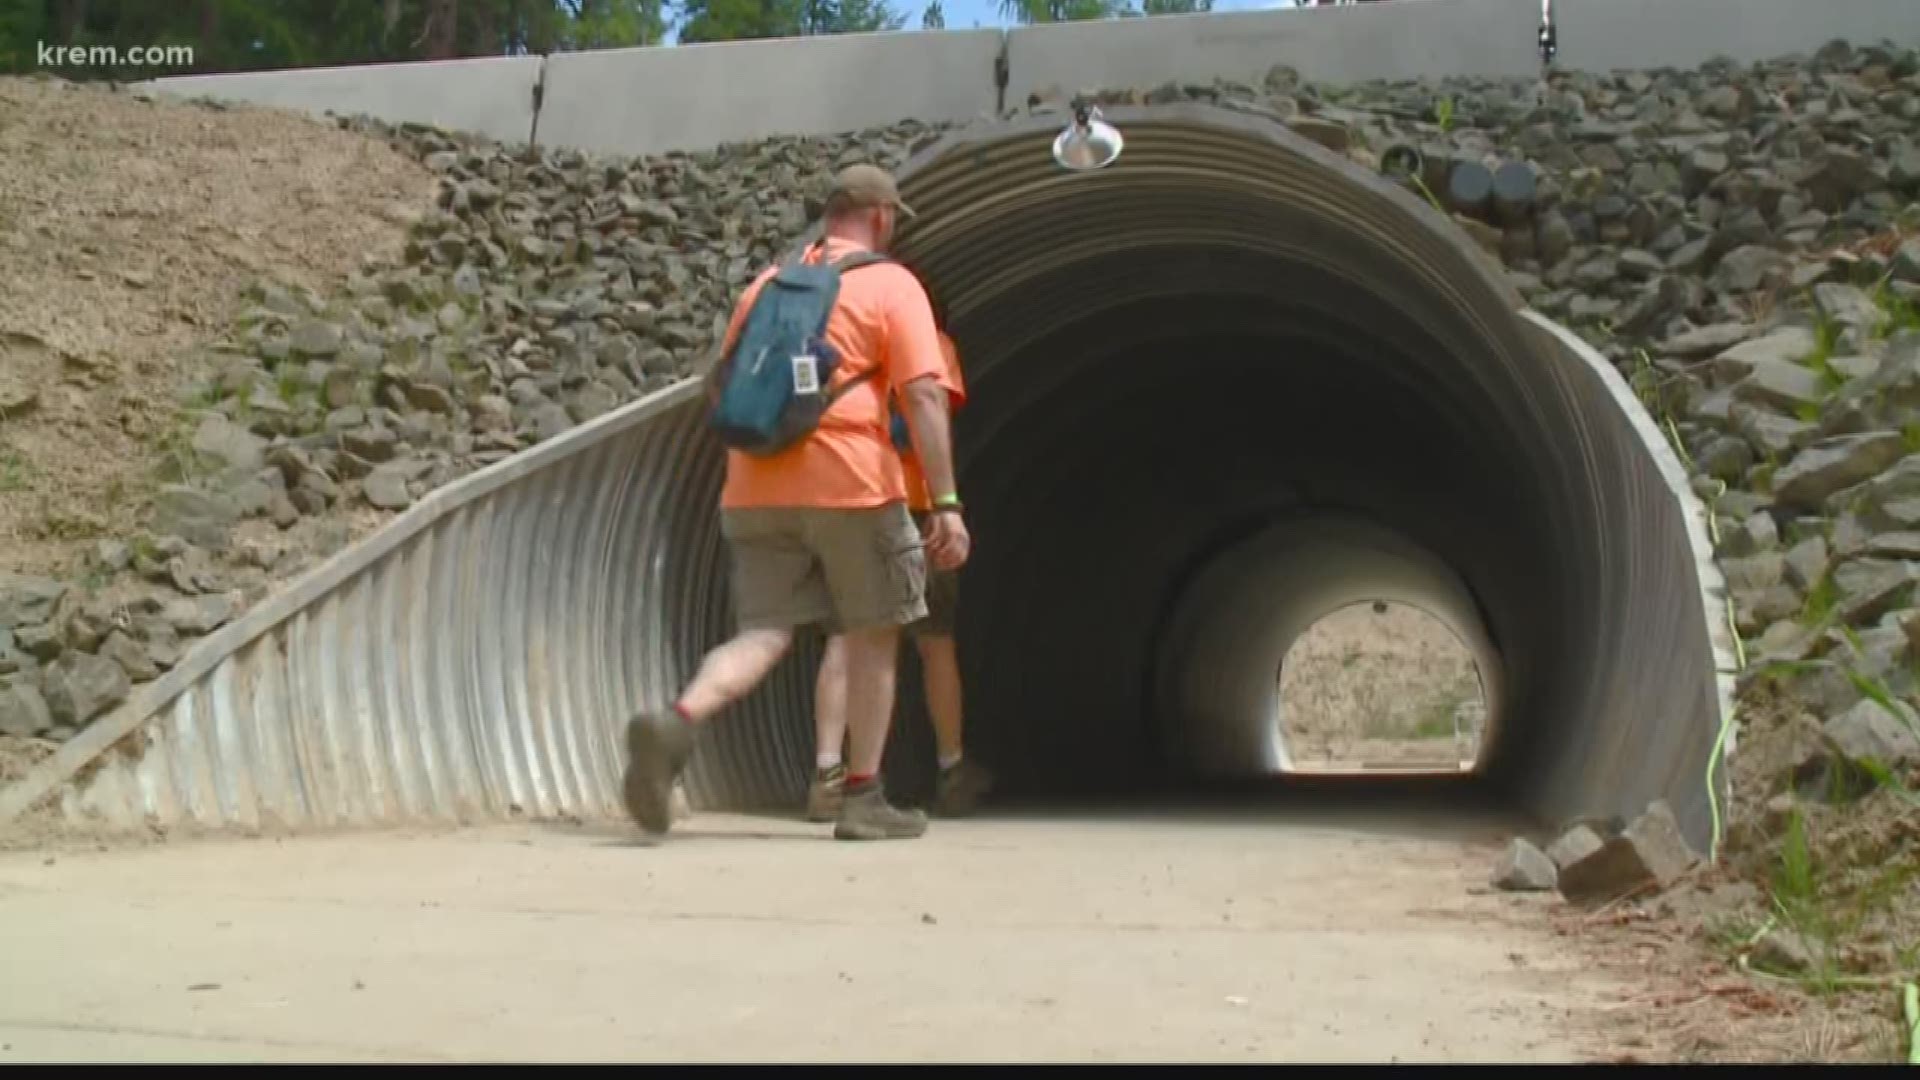 Pedestrian tunnel built near Boy Scout camp